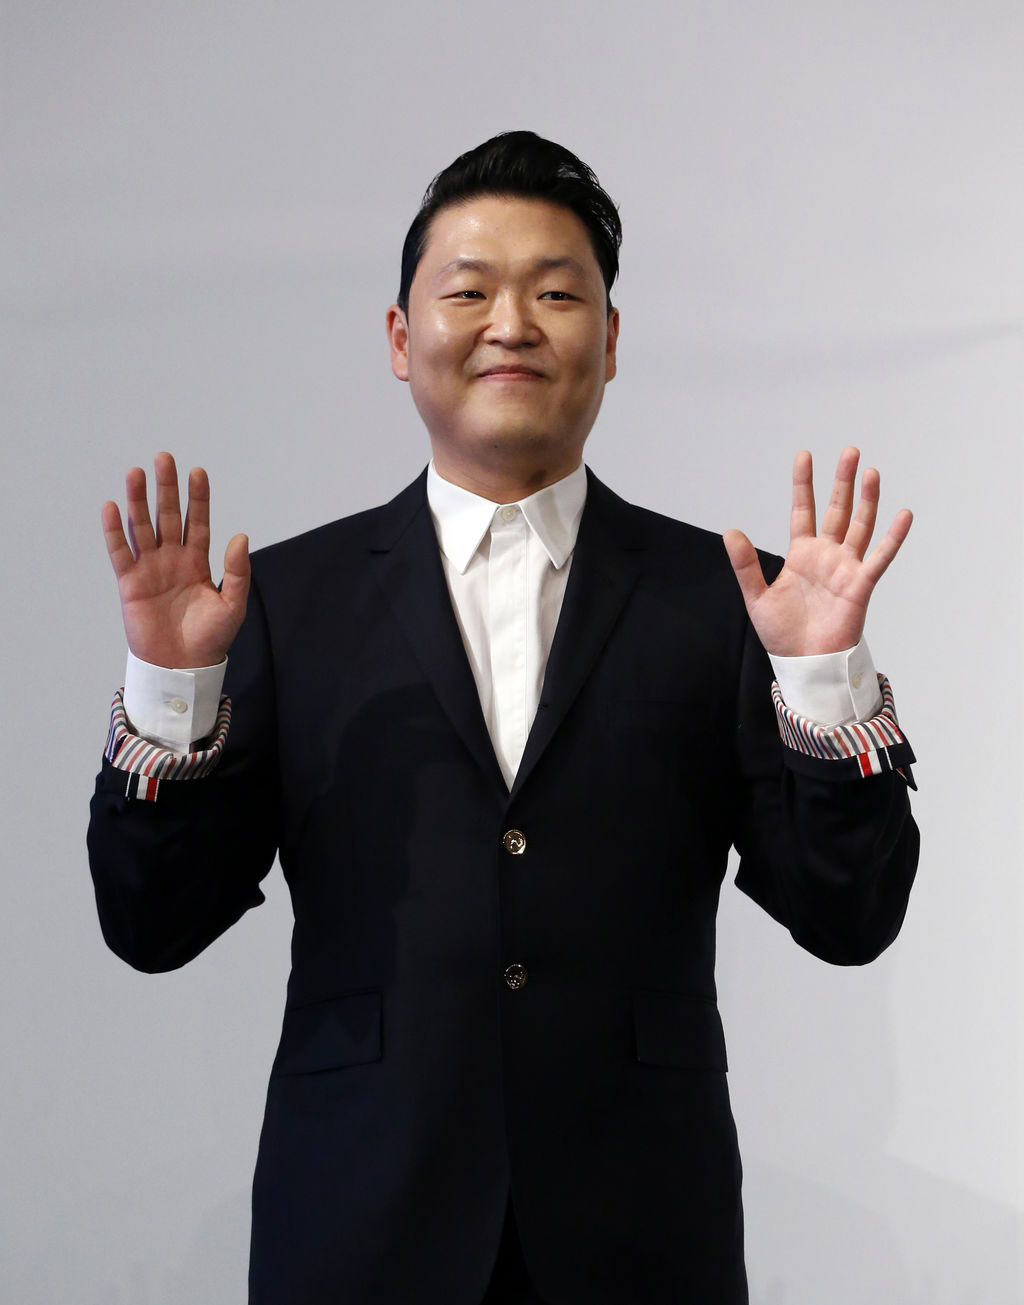 El canante reconoció que el éxito de Gangnam Style en 2012 le supuso una fuerte presión que le hizo perder fluidez para componer nuevos temas. (ARCHIVO)